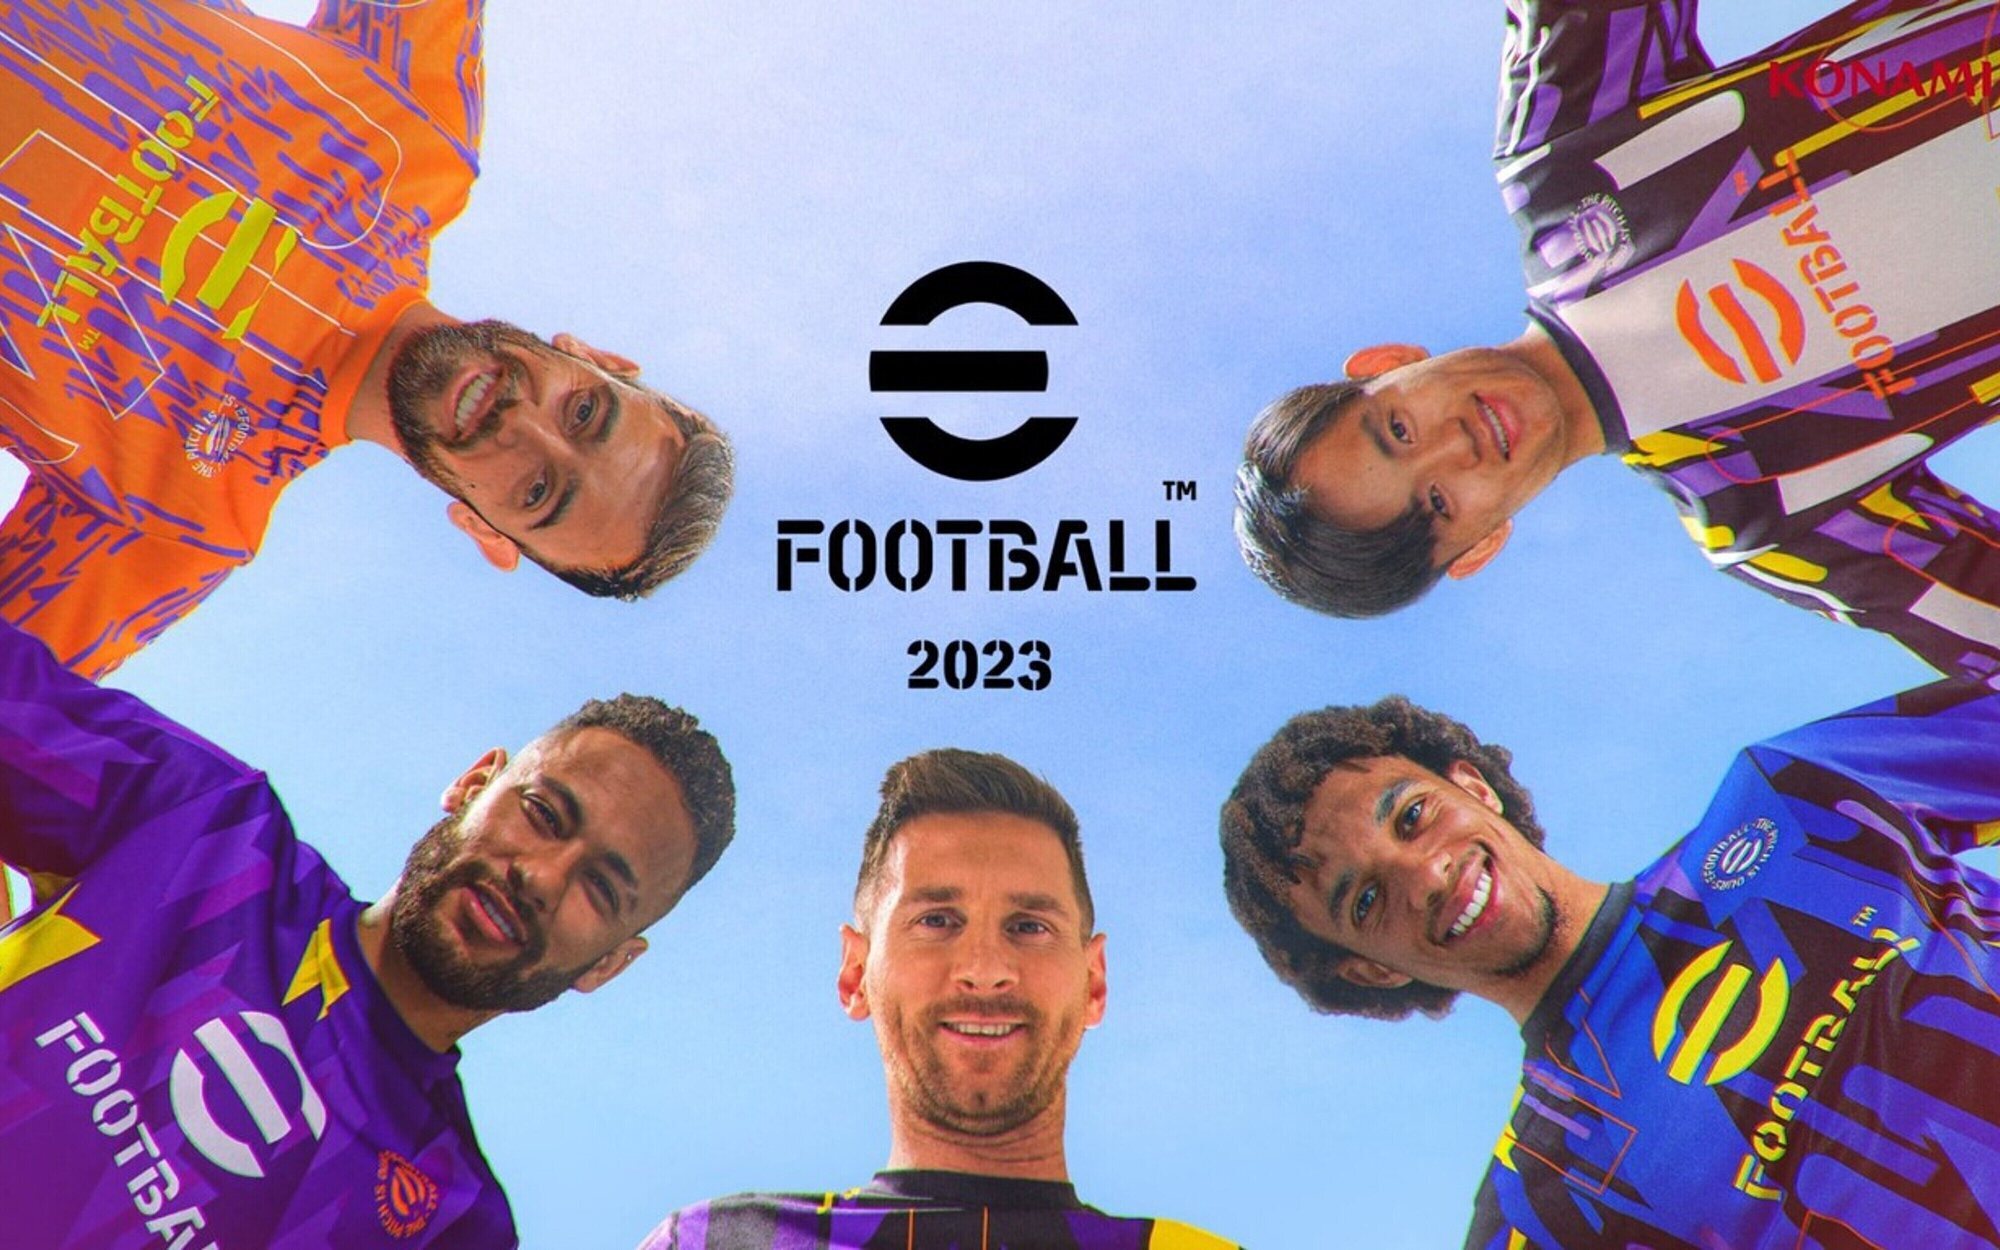 La Temporada 2 de 'eFootball 2023' arranca hoy con 40 nuevos equipos, Maradona y más